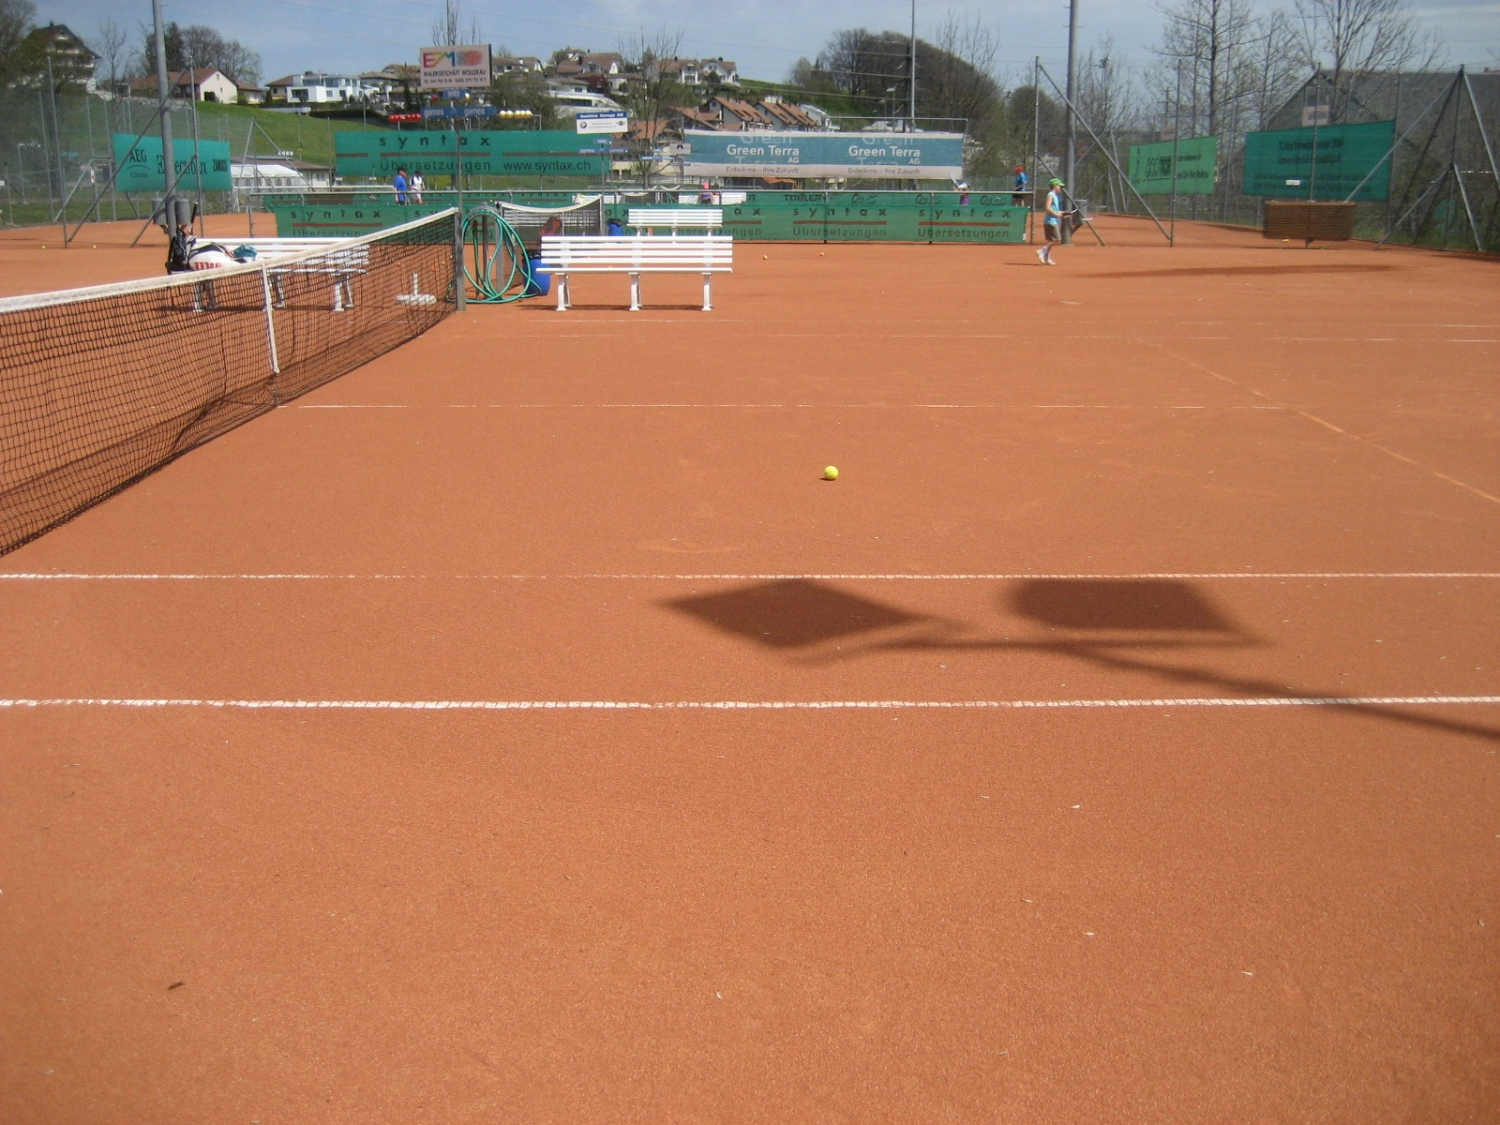 1205 Tennisplatz Worb Bild 1*